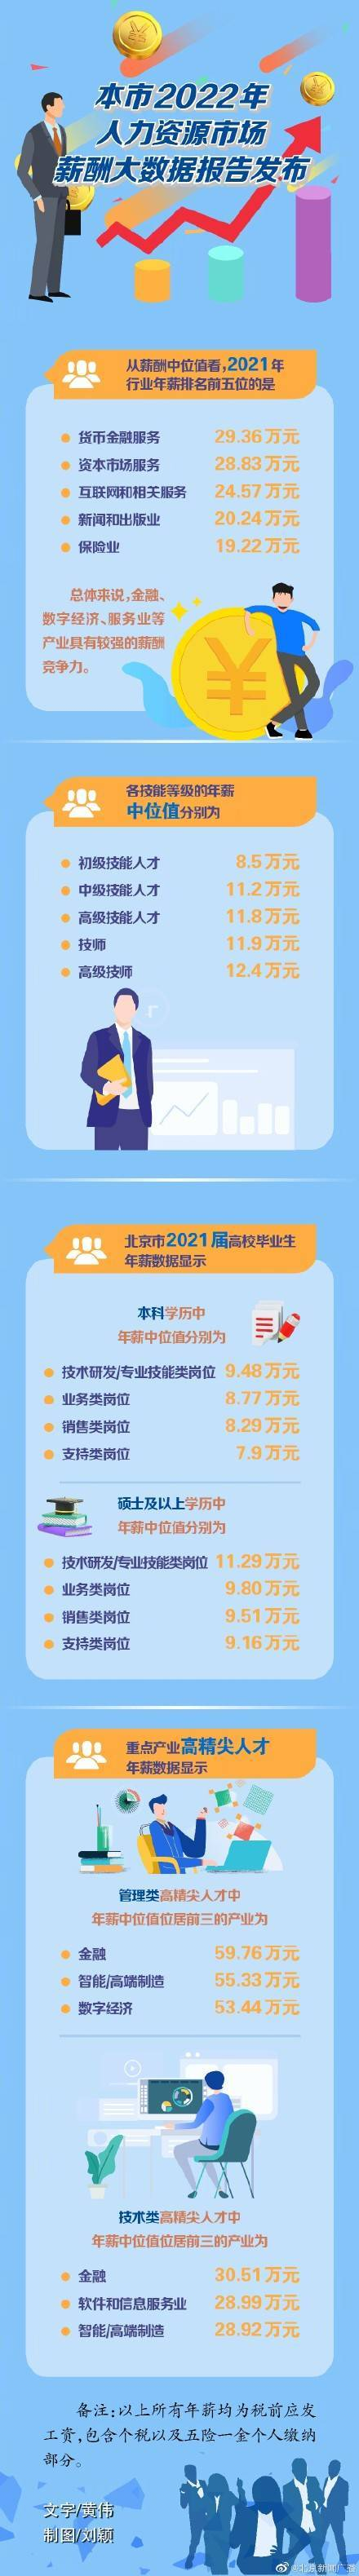 北京2021年行业薪酬排名前五